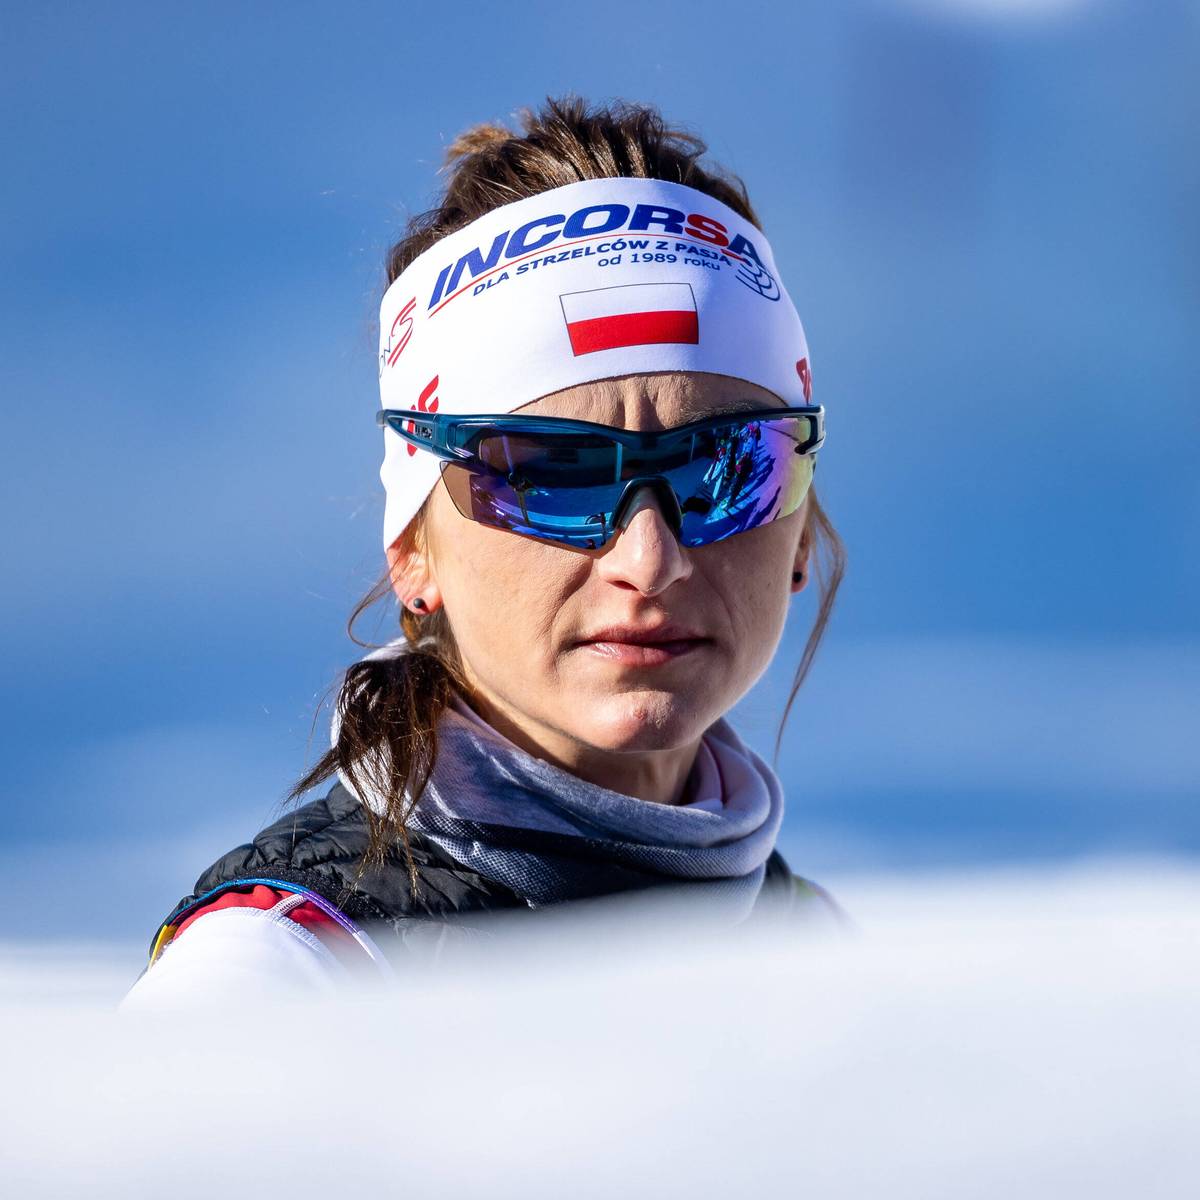 Monika Hojnisz-Starega verkündet ihren Rückzug von der Saison 2022/23 und ist damit das nächste prominente Gesicht, das der Biathlon verliert. Jedoch kündigte sie auch an, dass ihr Rückzug nicht mit ihrem Karriereende einhergehe. 